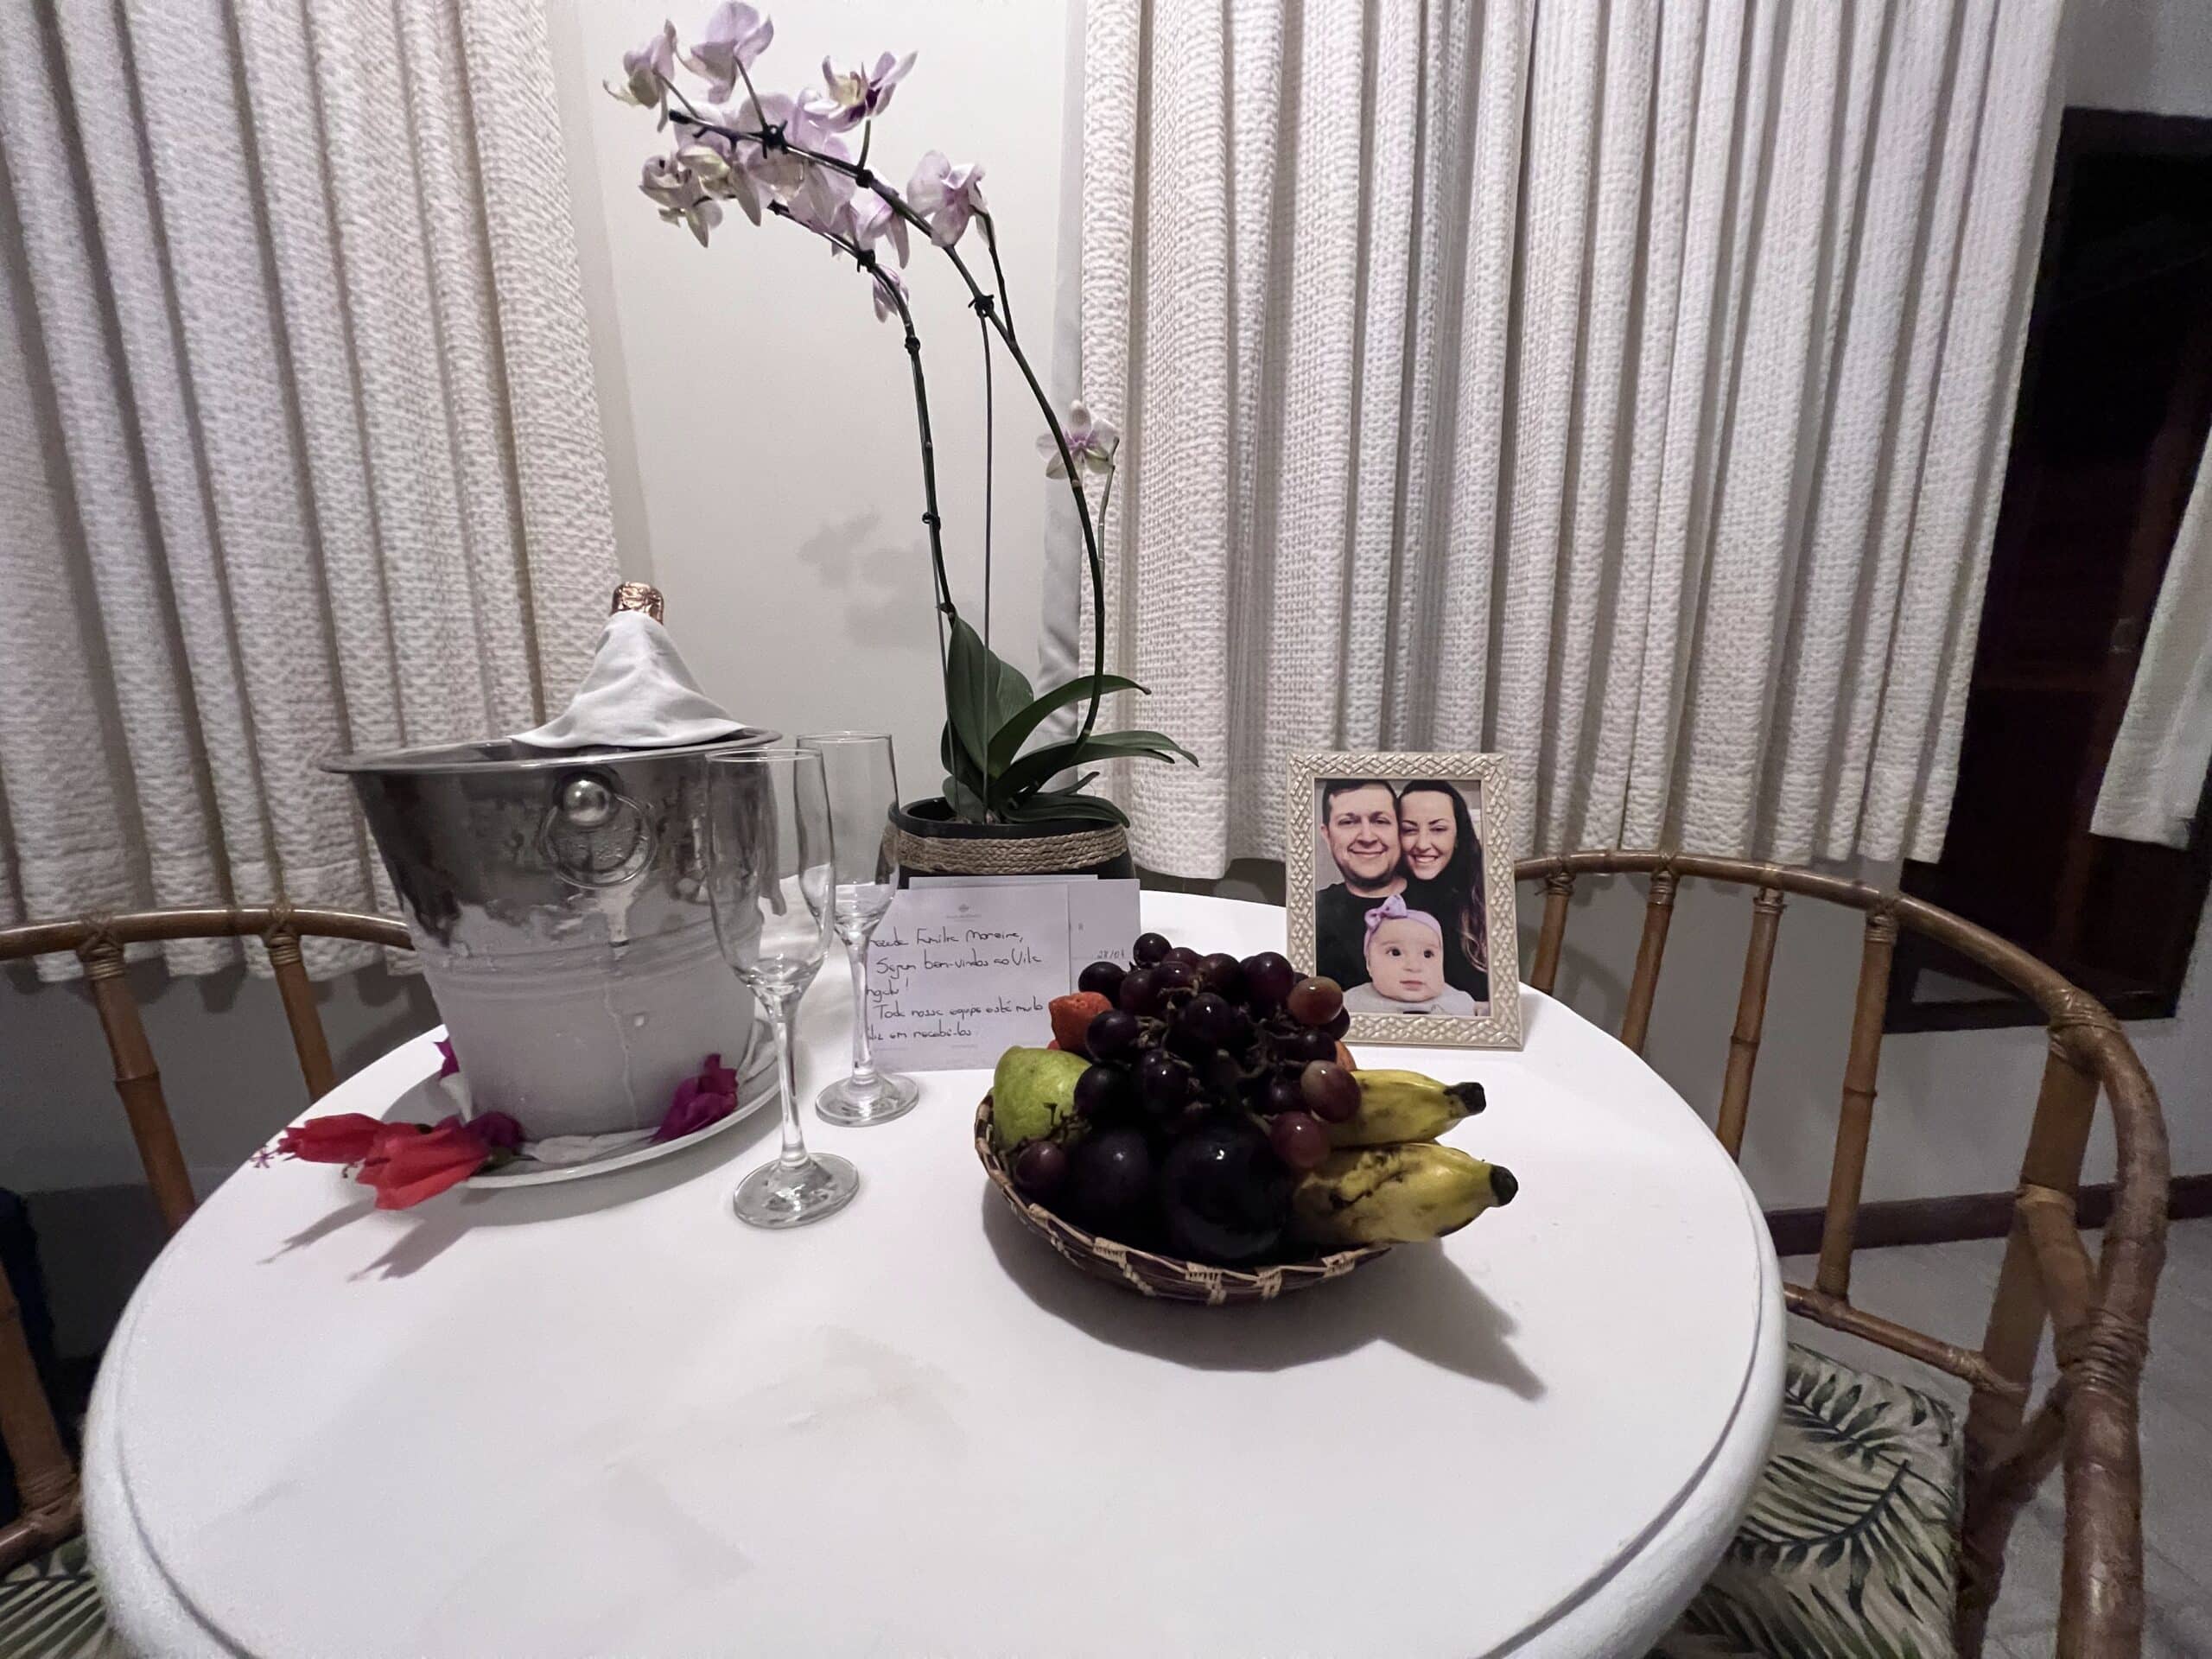 Mimos na chagada ao quarto do Vila Angatu Eco Resort & Spa, com garrafa de champanhe, taças, frutas, cartinha e porta-retrato com foto do Flávio, Ju e Manu